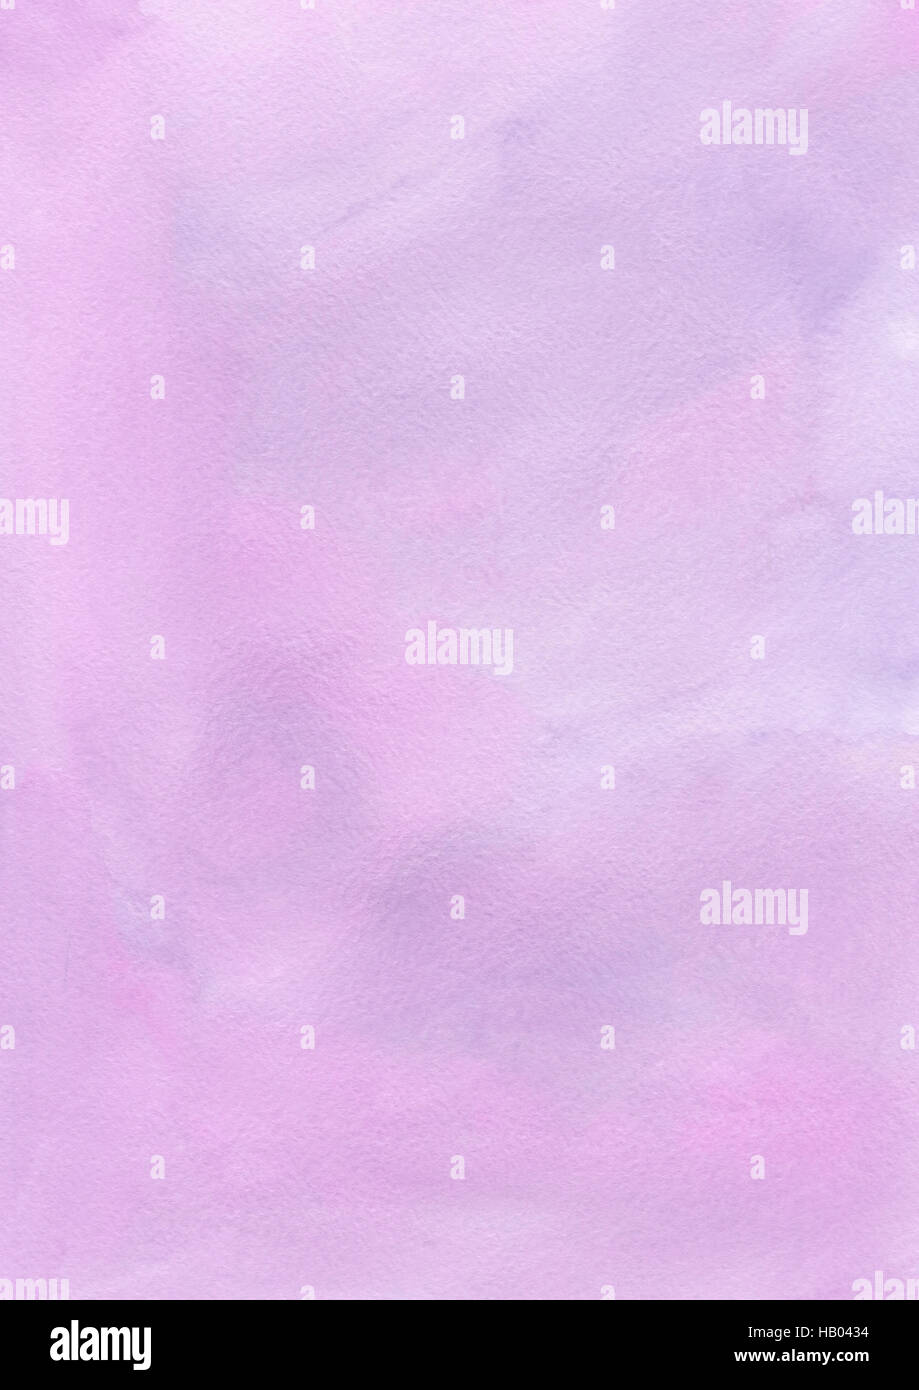 Inchiostro chiaro rosa pennello Acquerelli di texture di sfondo della carta Foto Stock